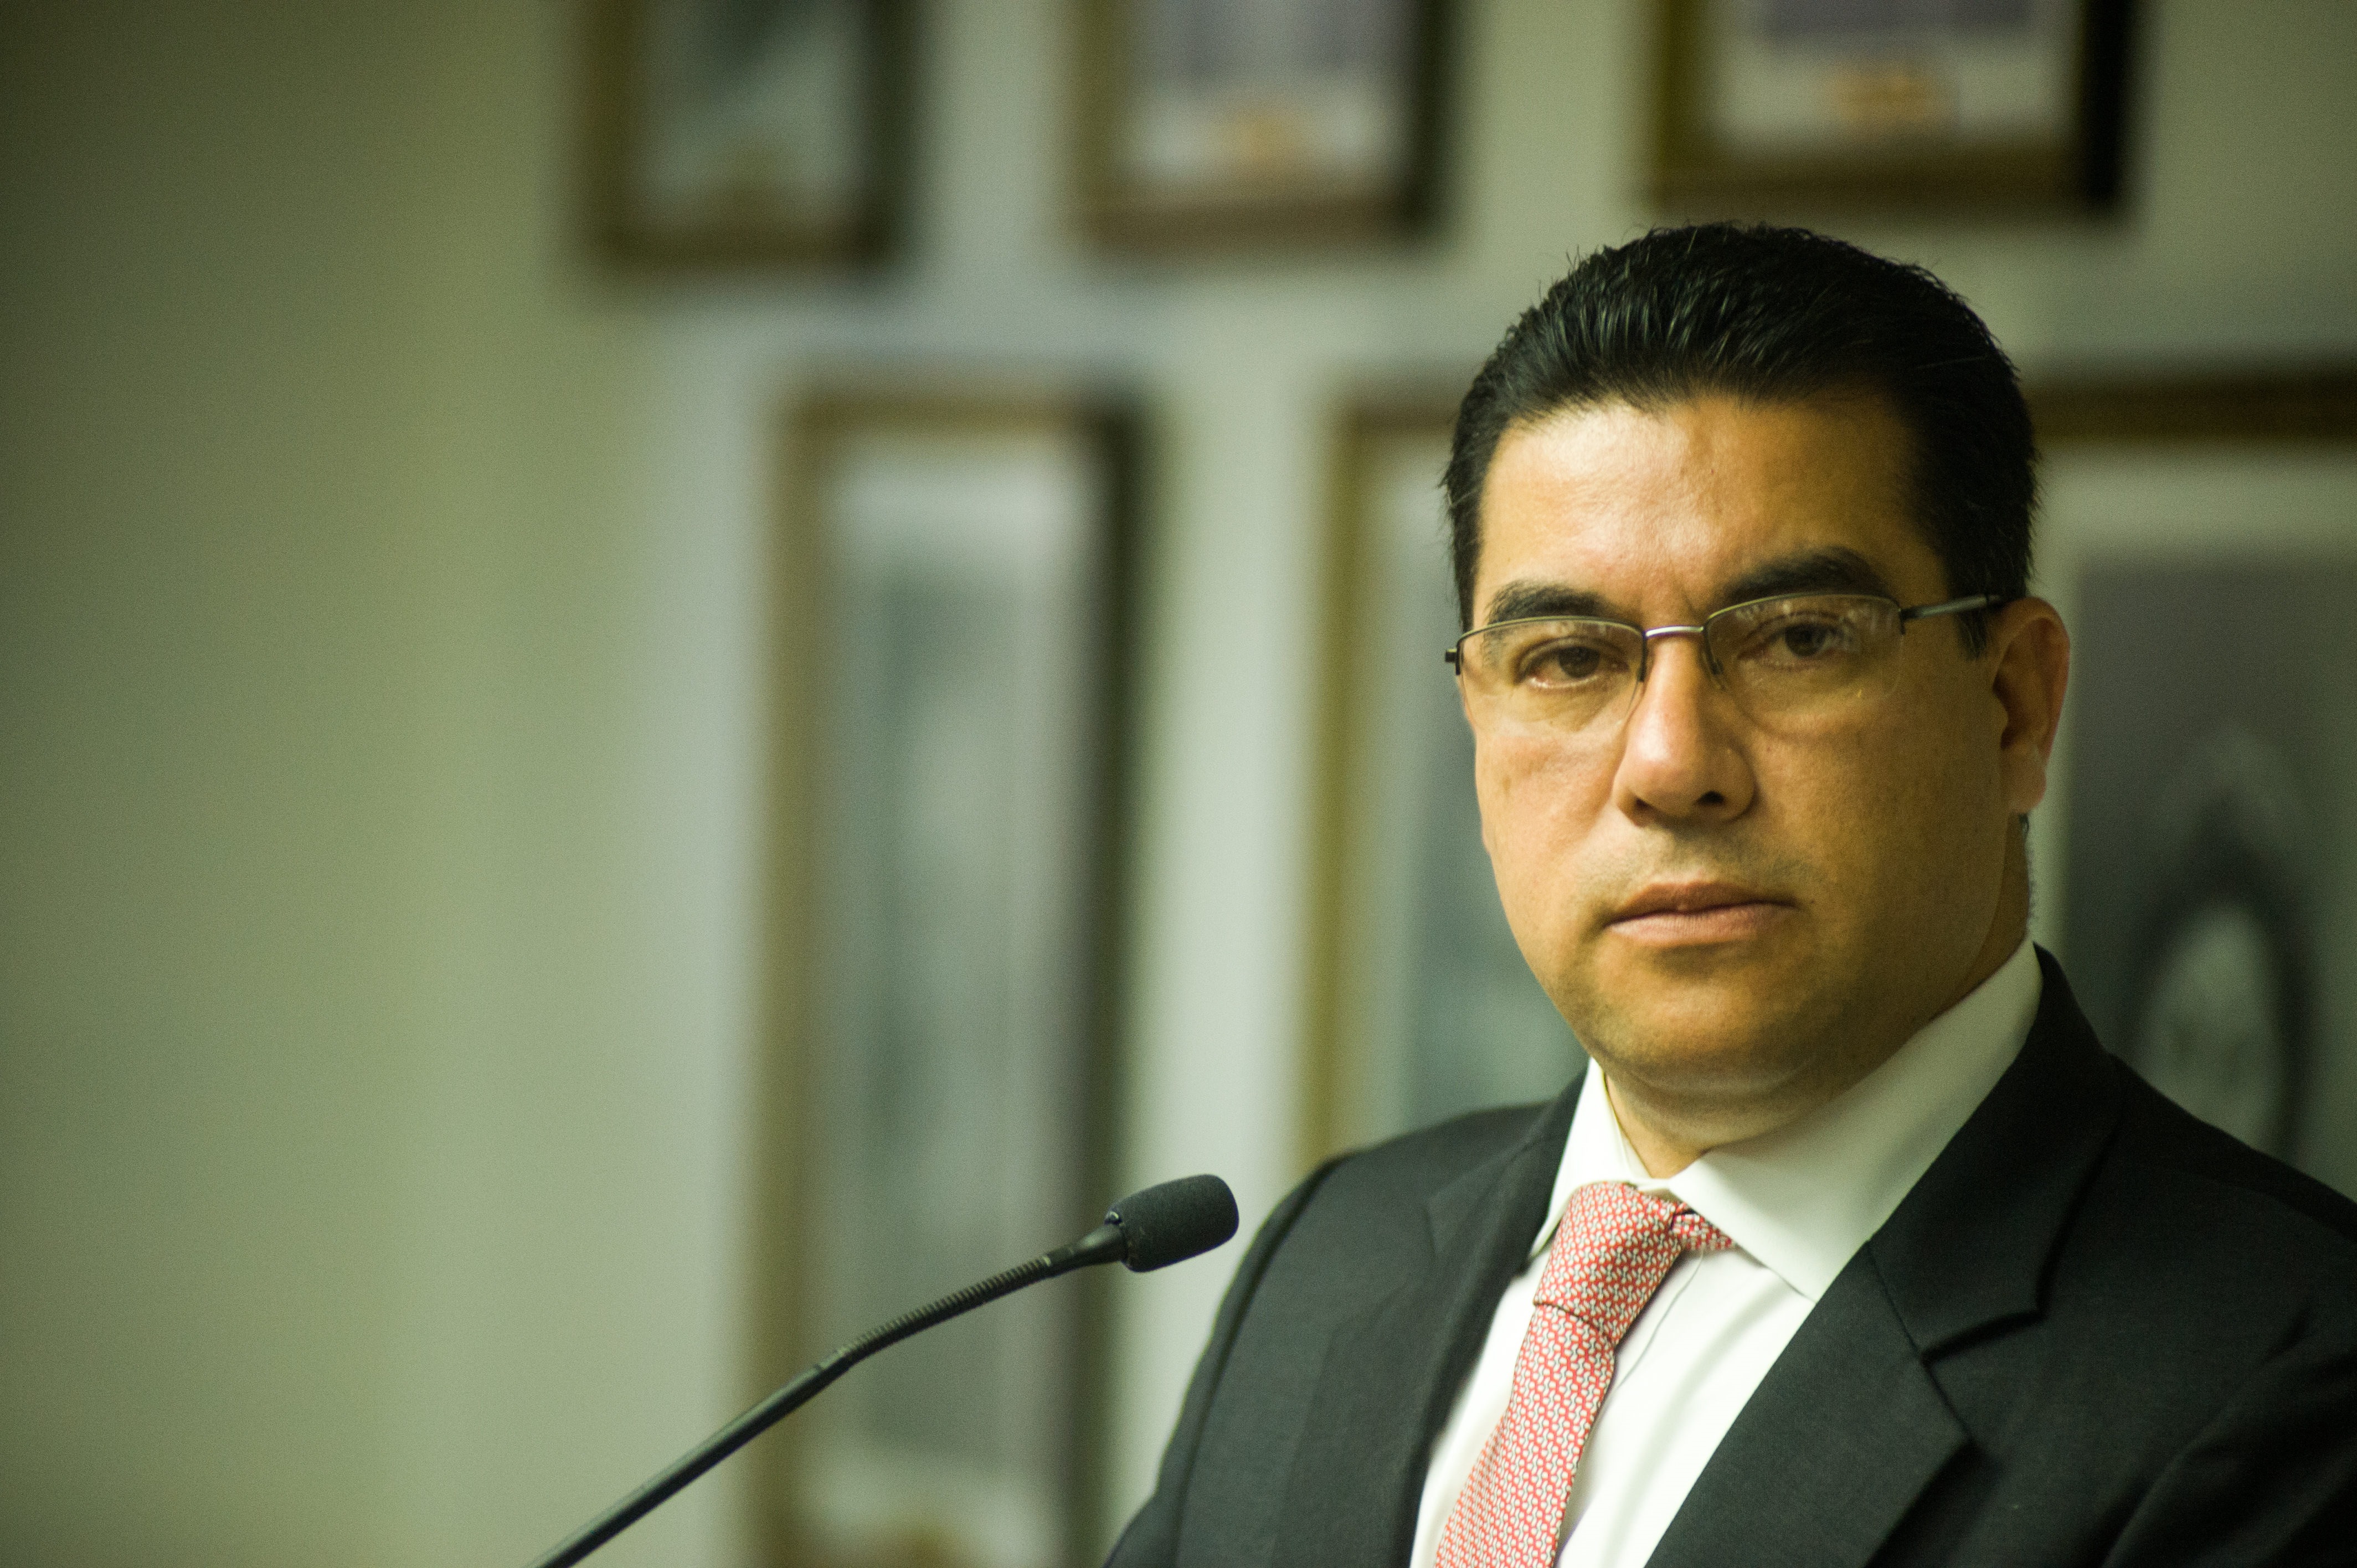 El fiscal general de El Salvador, Raúl Melara.

